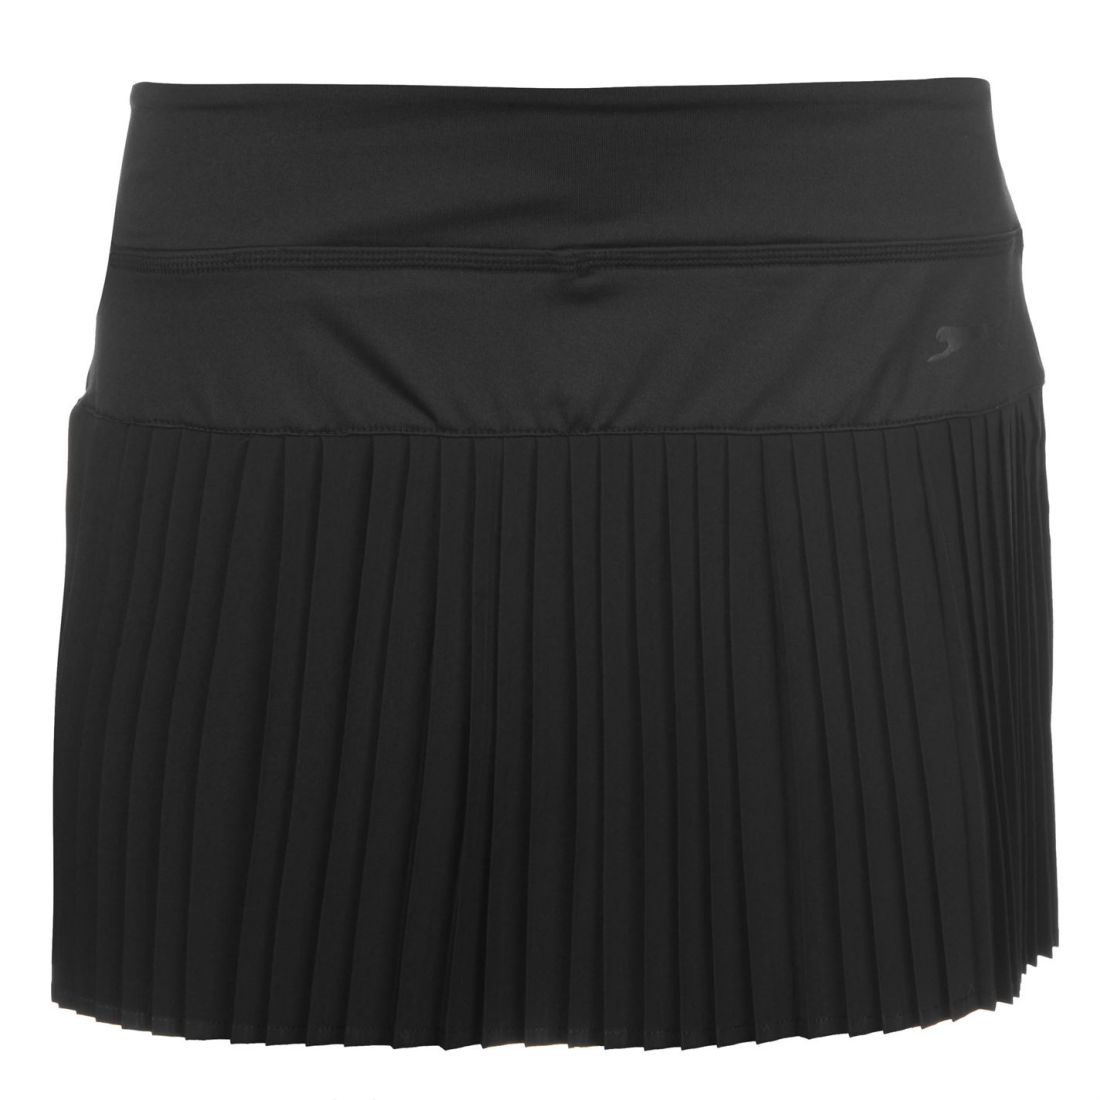 Slazenger Ladies Baseline Tennis Skort Skirt Ventilation Clothing | eBay